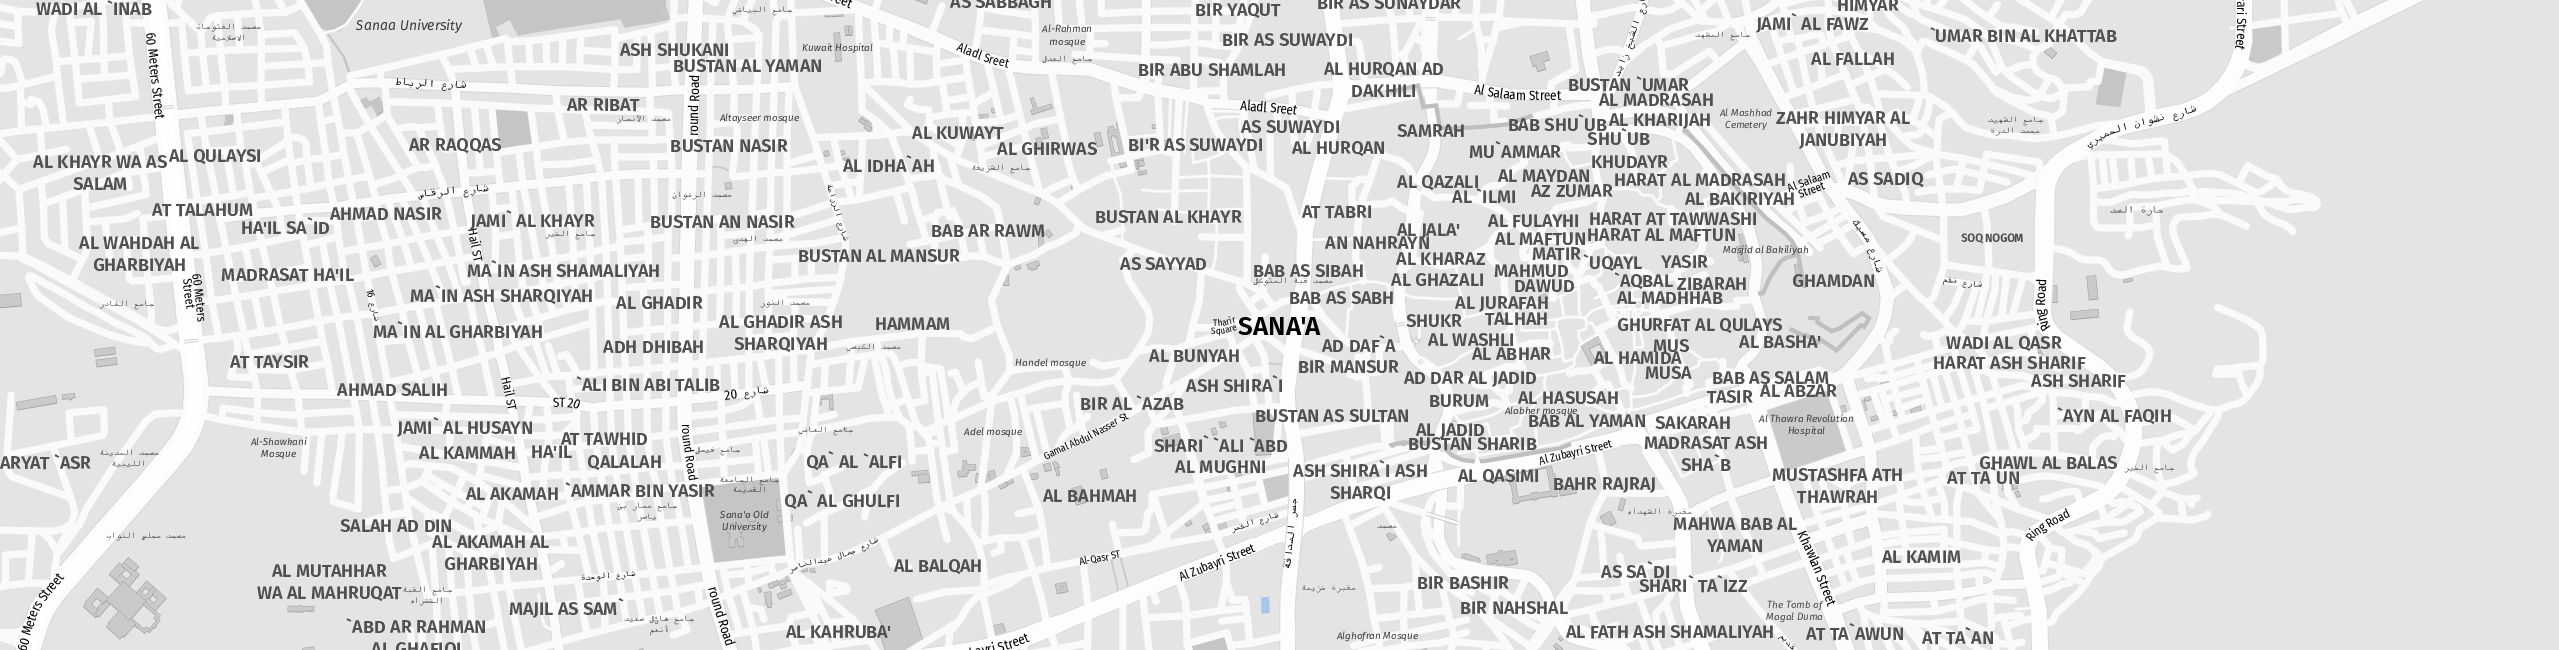 Stadtplan Sana'a zum Downloaden.